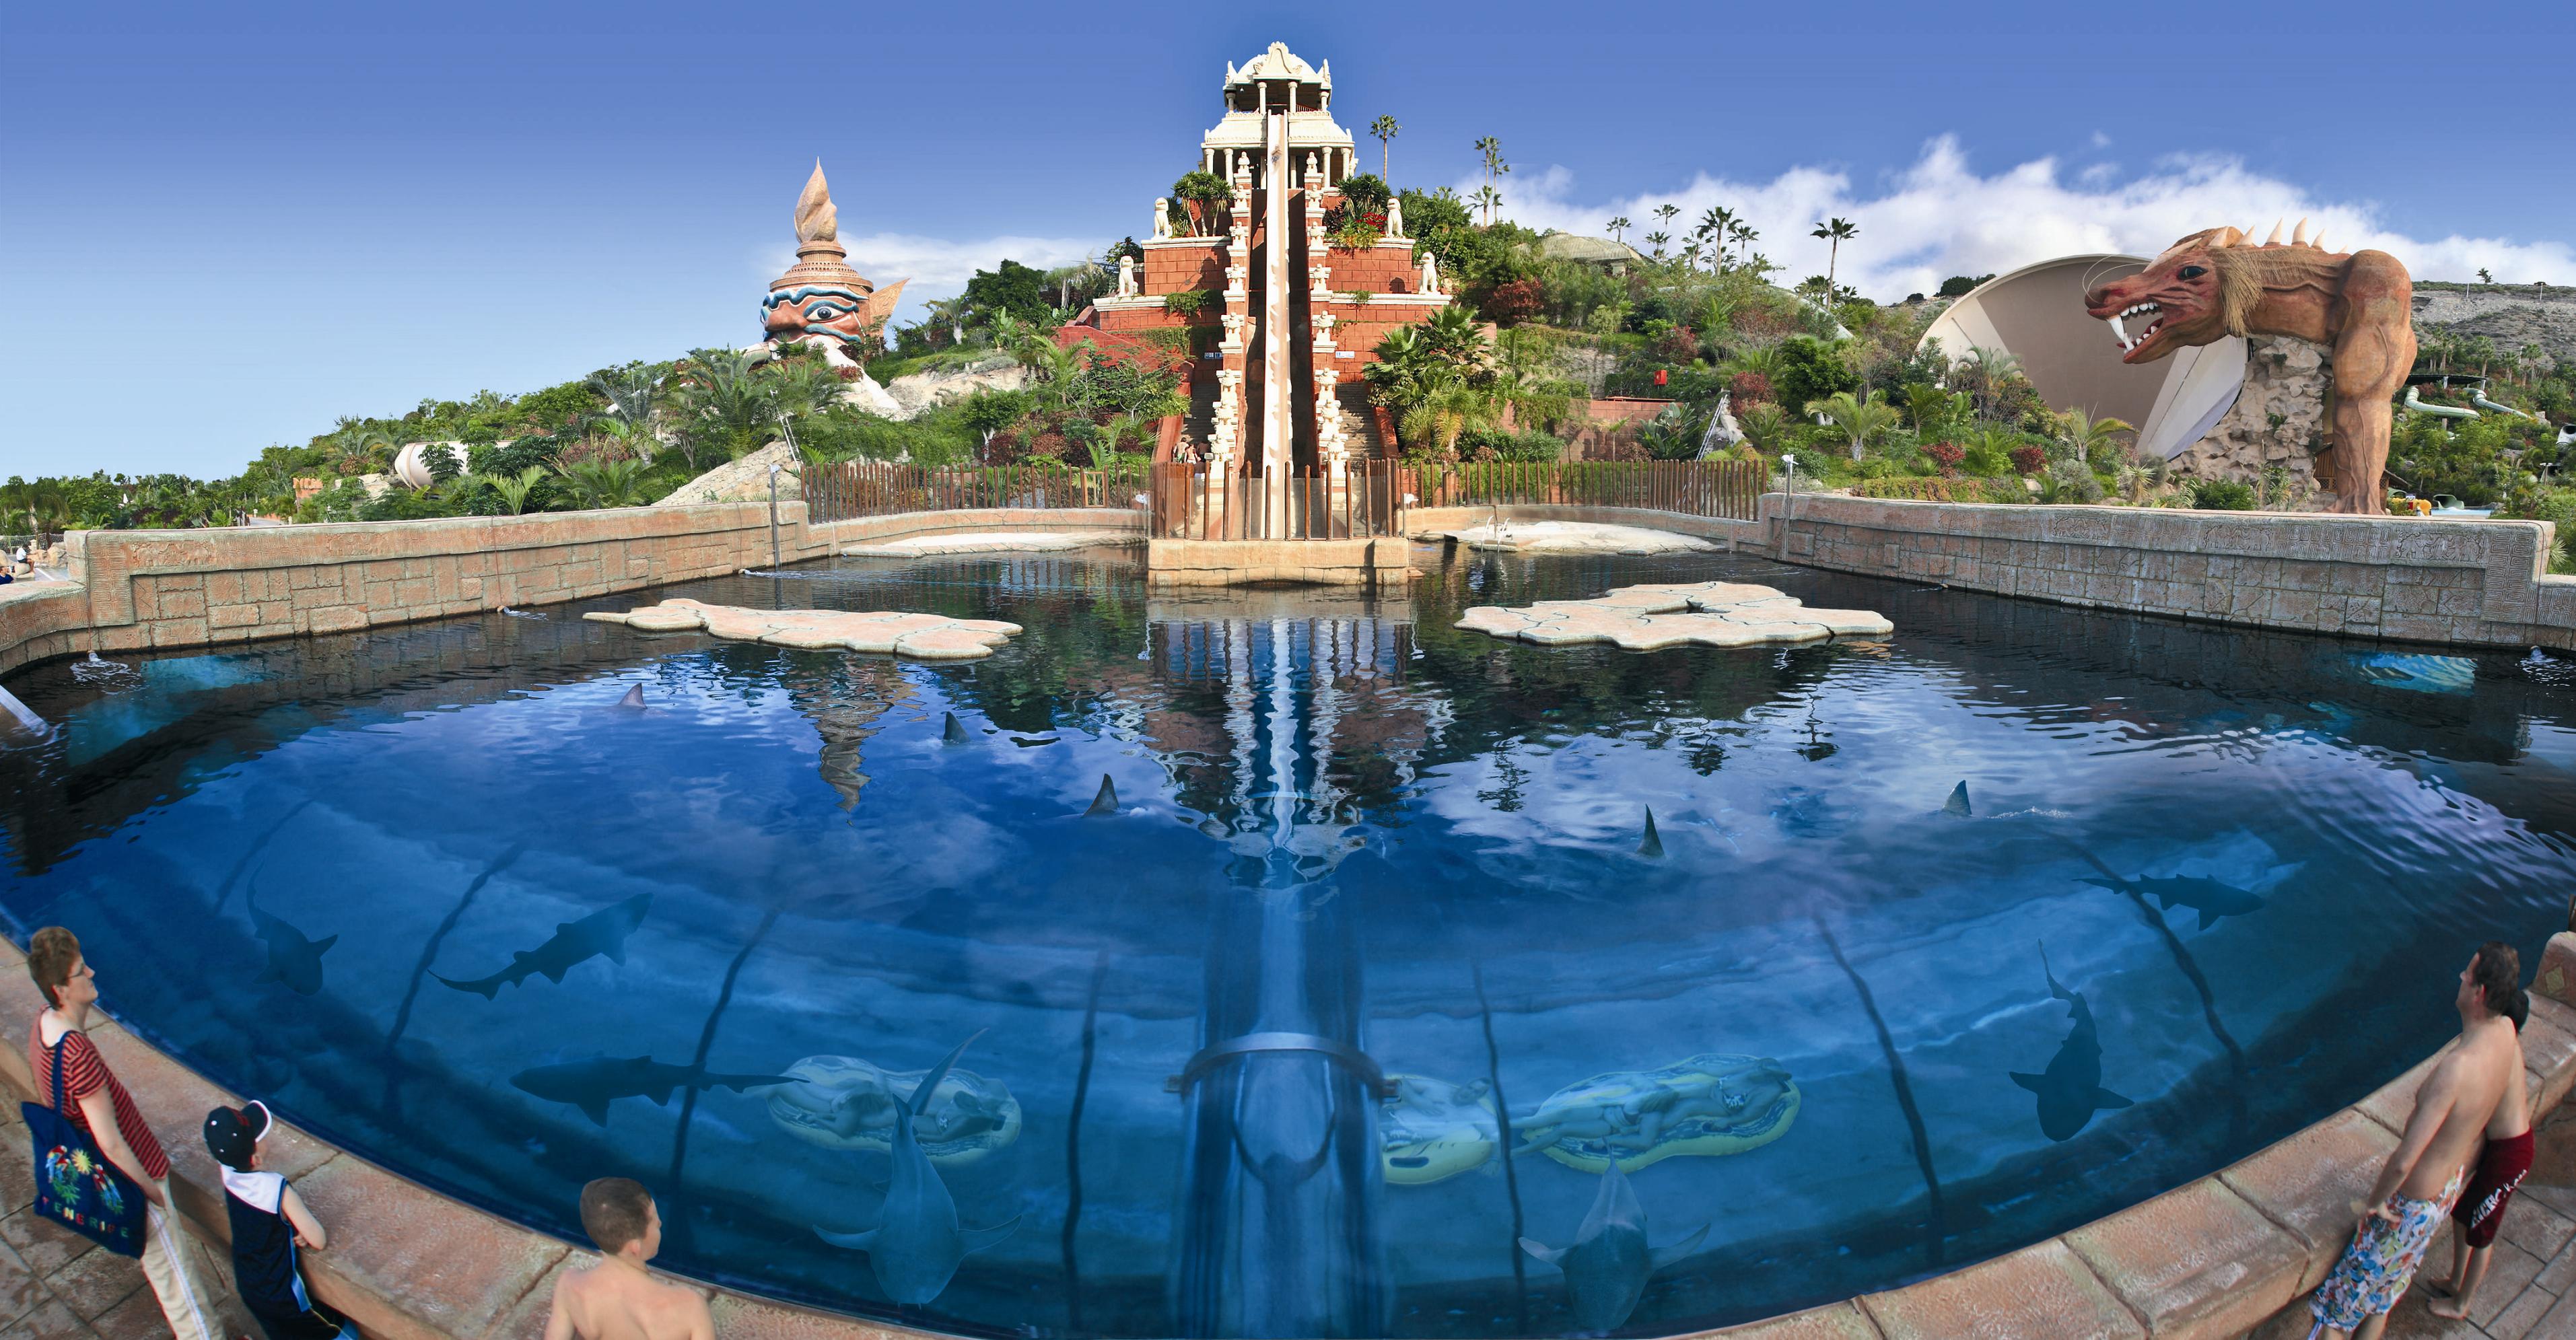 Siam Park, o melhor parque aquático do mundo, pelo Tripadvisor. Vem ver!